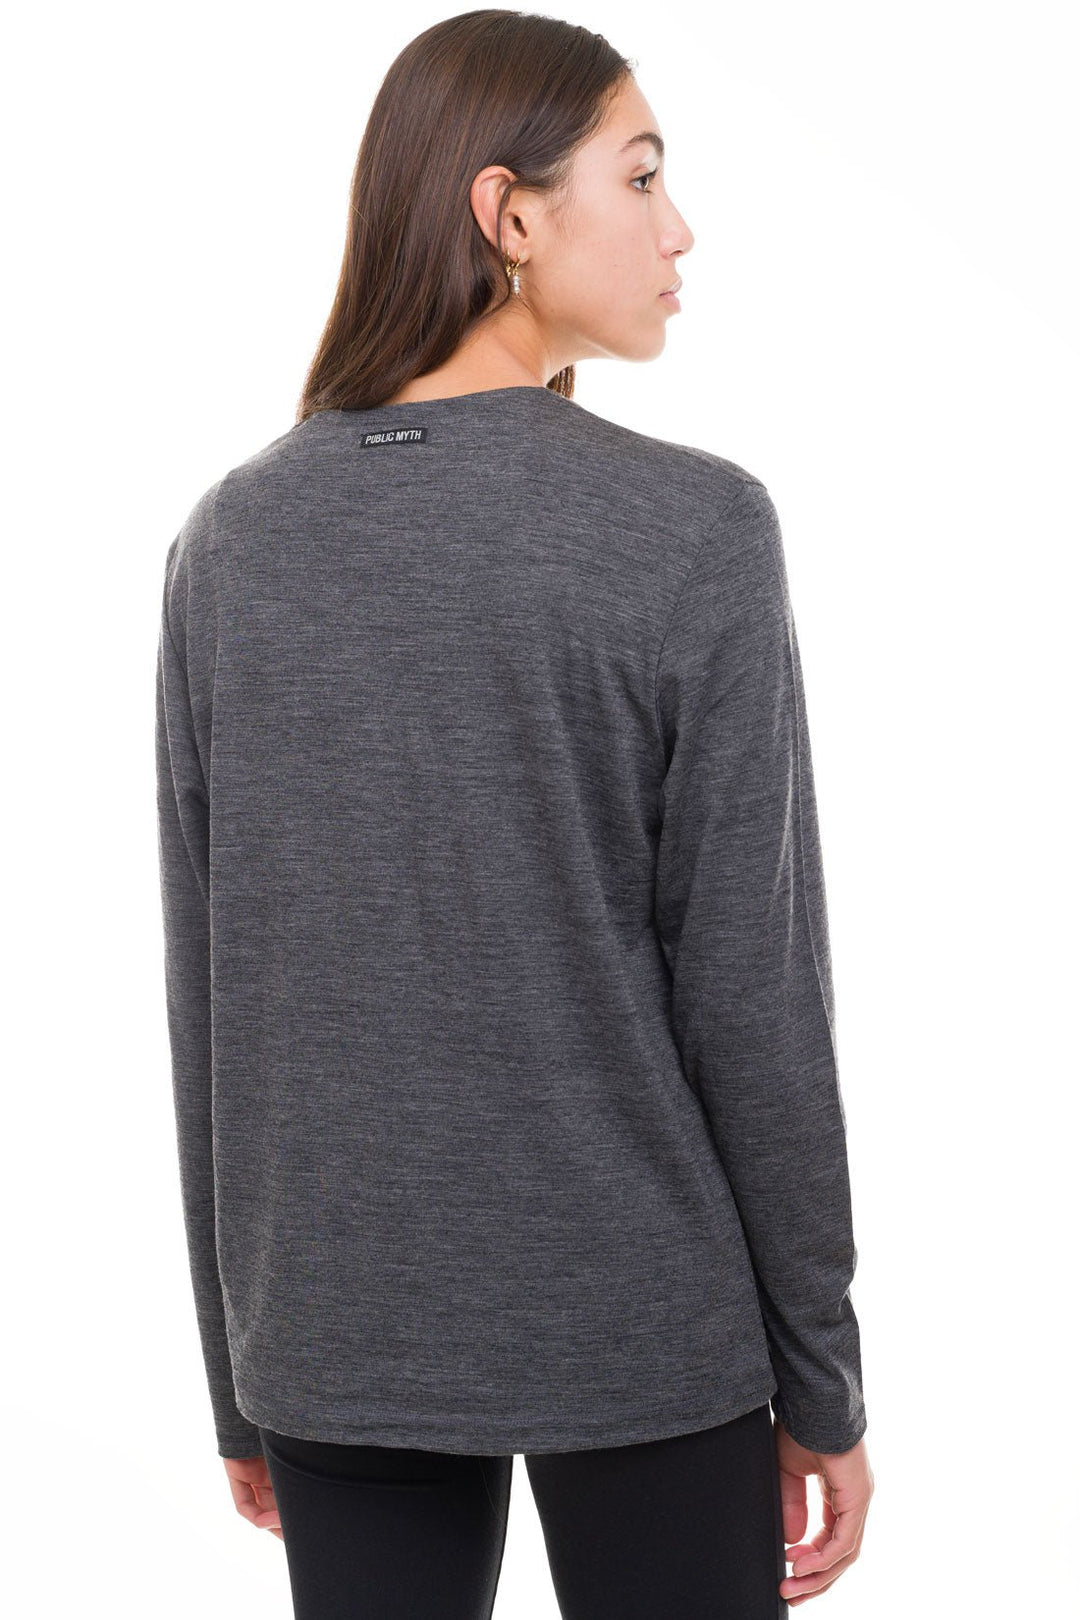 grey women's merino wool shirt